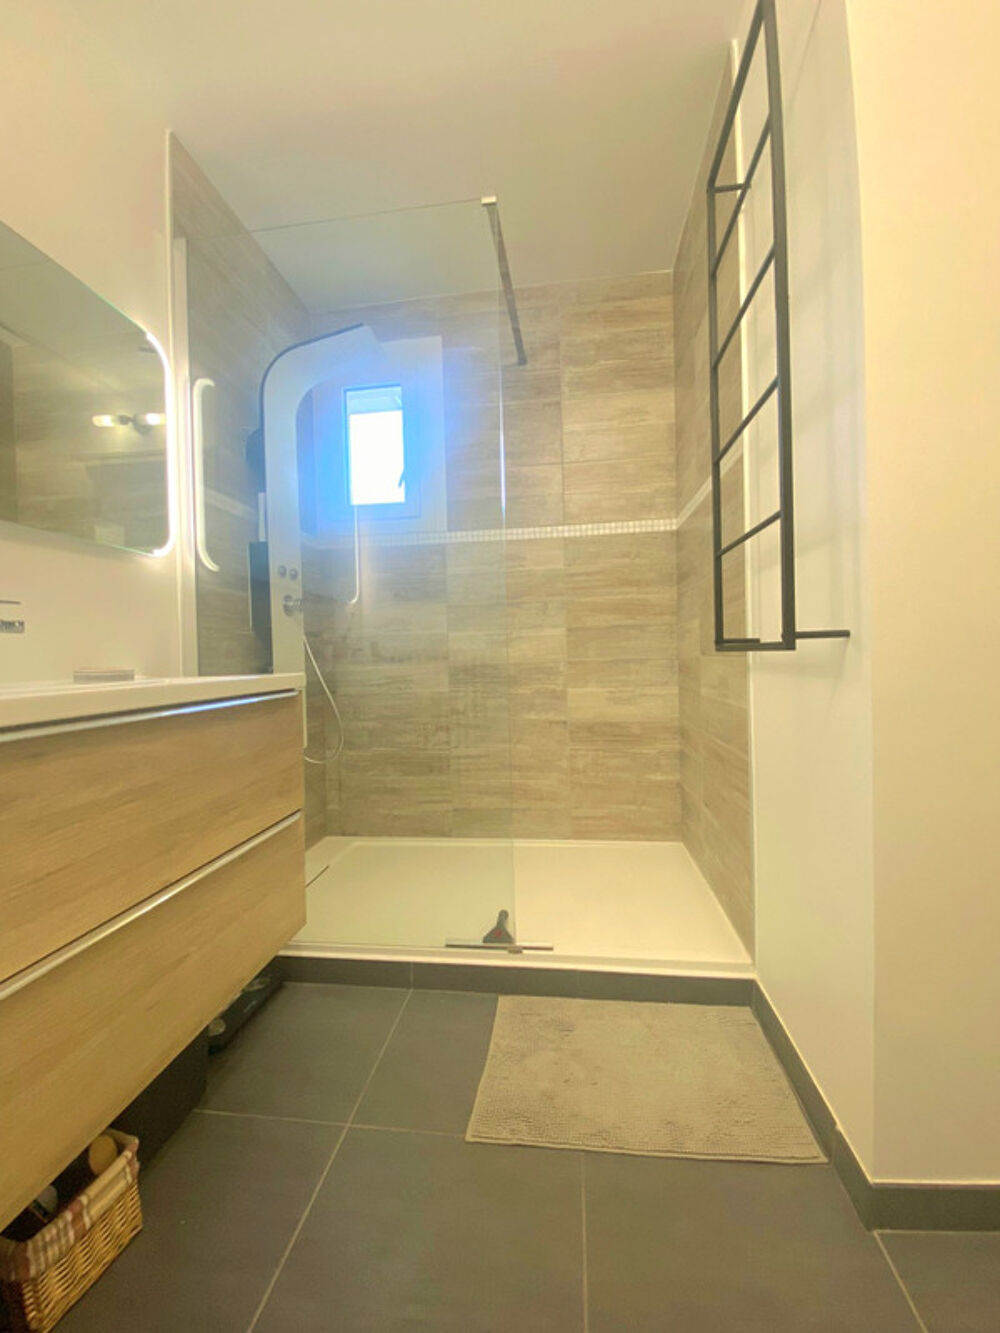 Vente Appartement Dpt Savoie (73),  vendre AIX LES BAINS appartement T2 de 36,47m2 avec double balcon Aix les bains